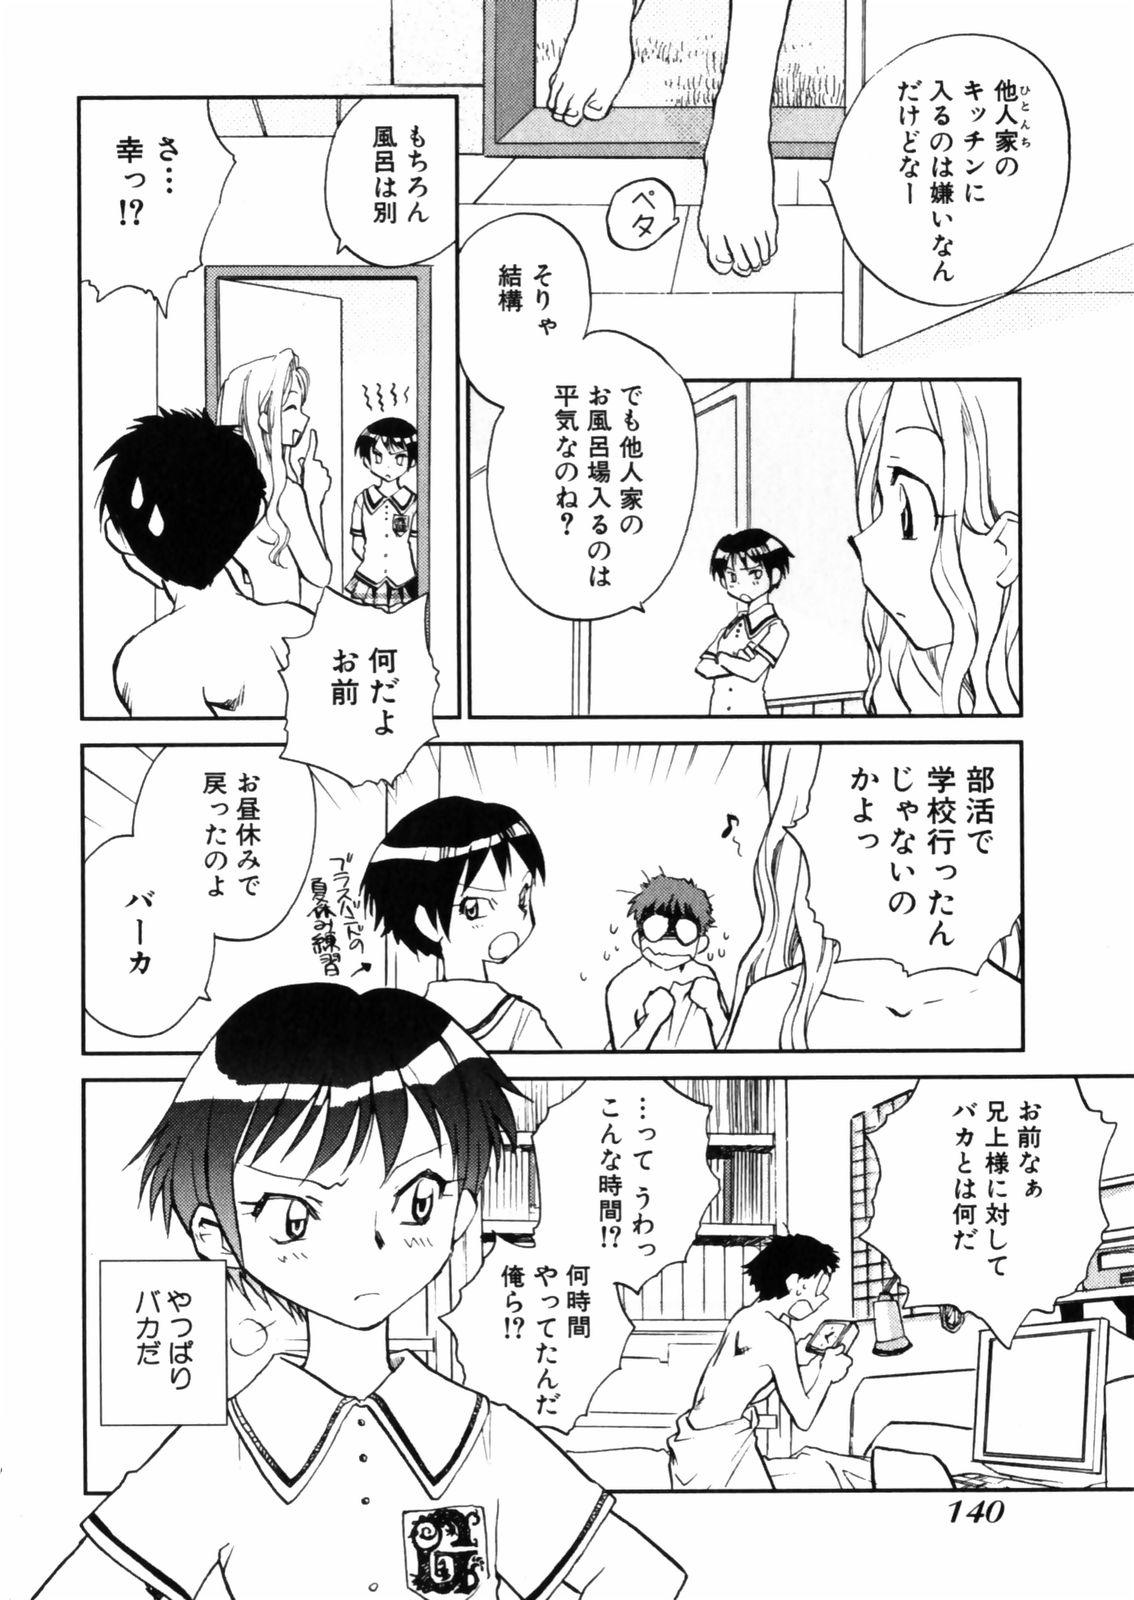 [Okano Ahiru] Hanasake ! Otome Juku (Otome Private Tutoring School) Vol.2 141